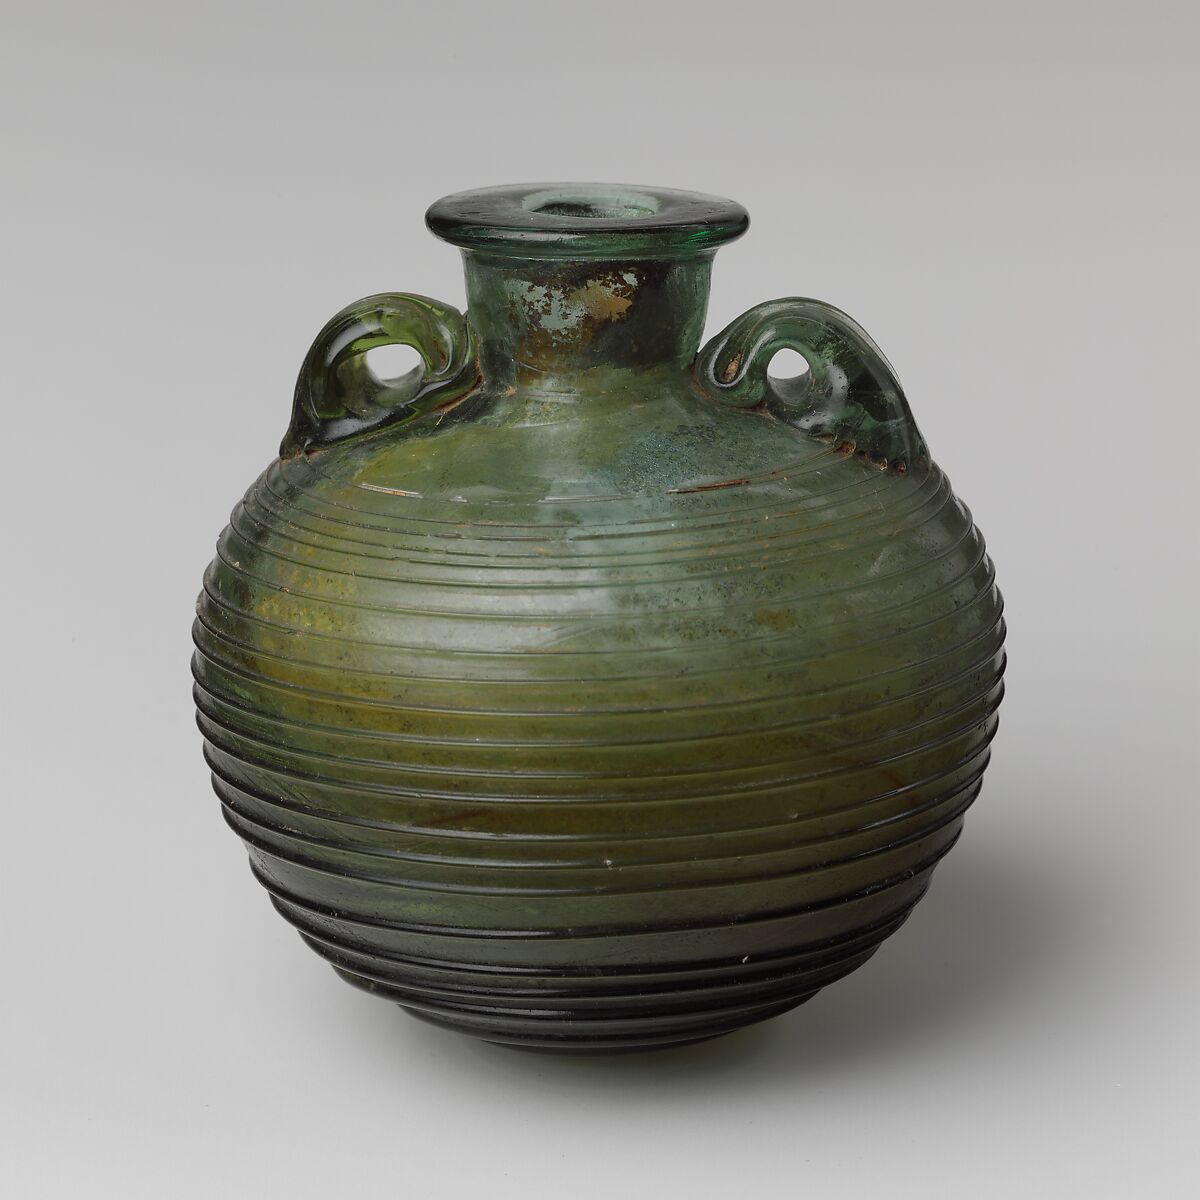 Glass aryballos (oil bottle), Glass, Roman 